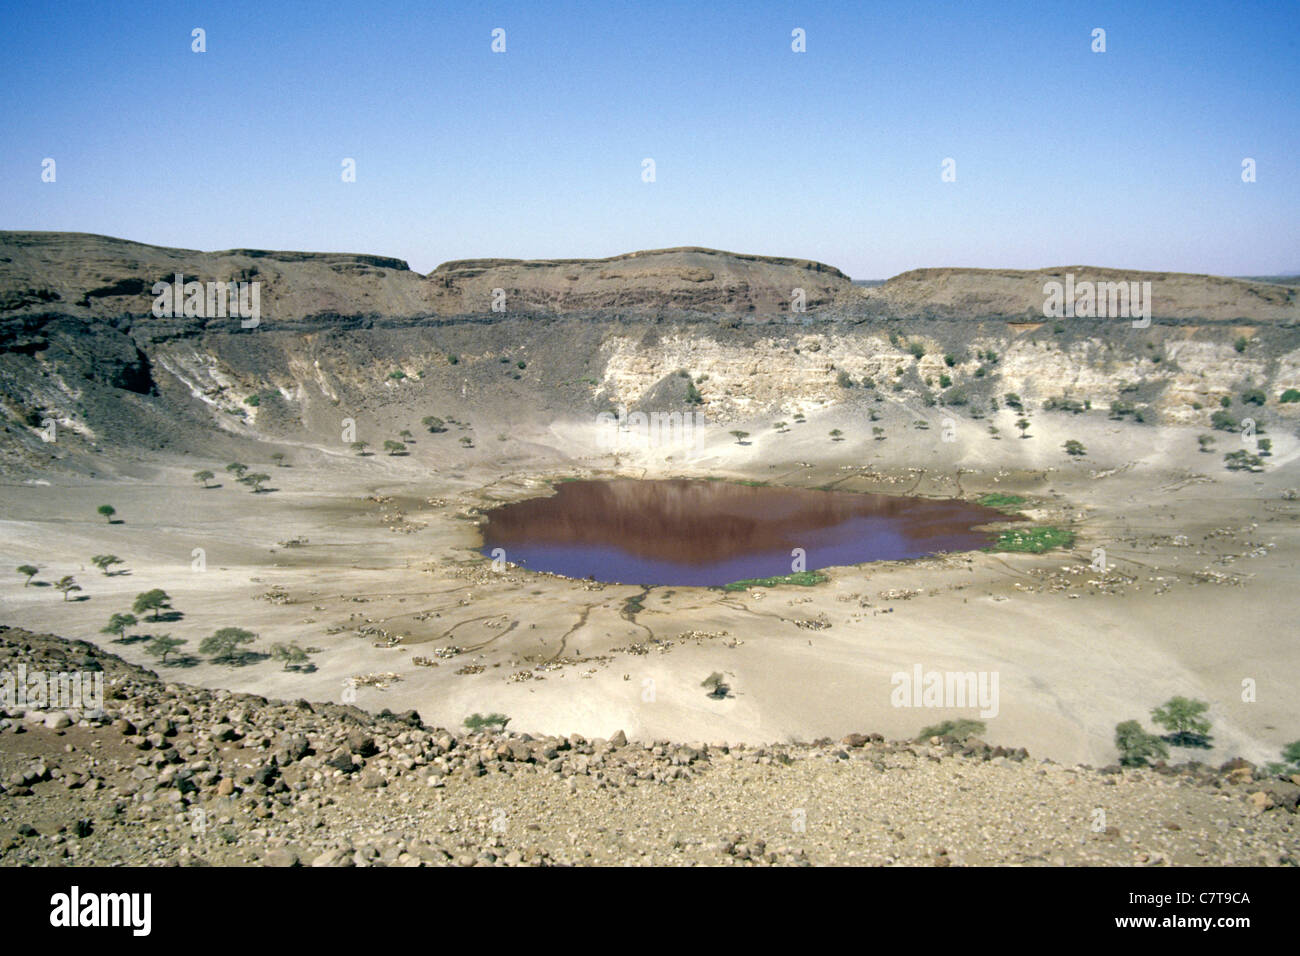 Africa, Sudan, Atrum crater Stock Photo